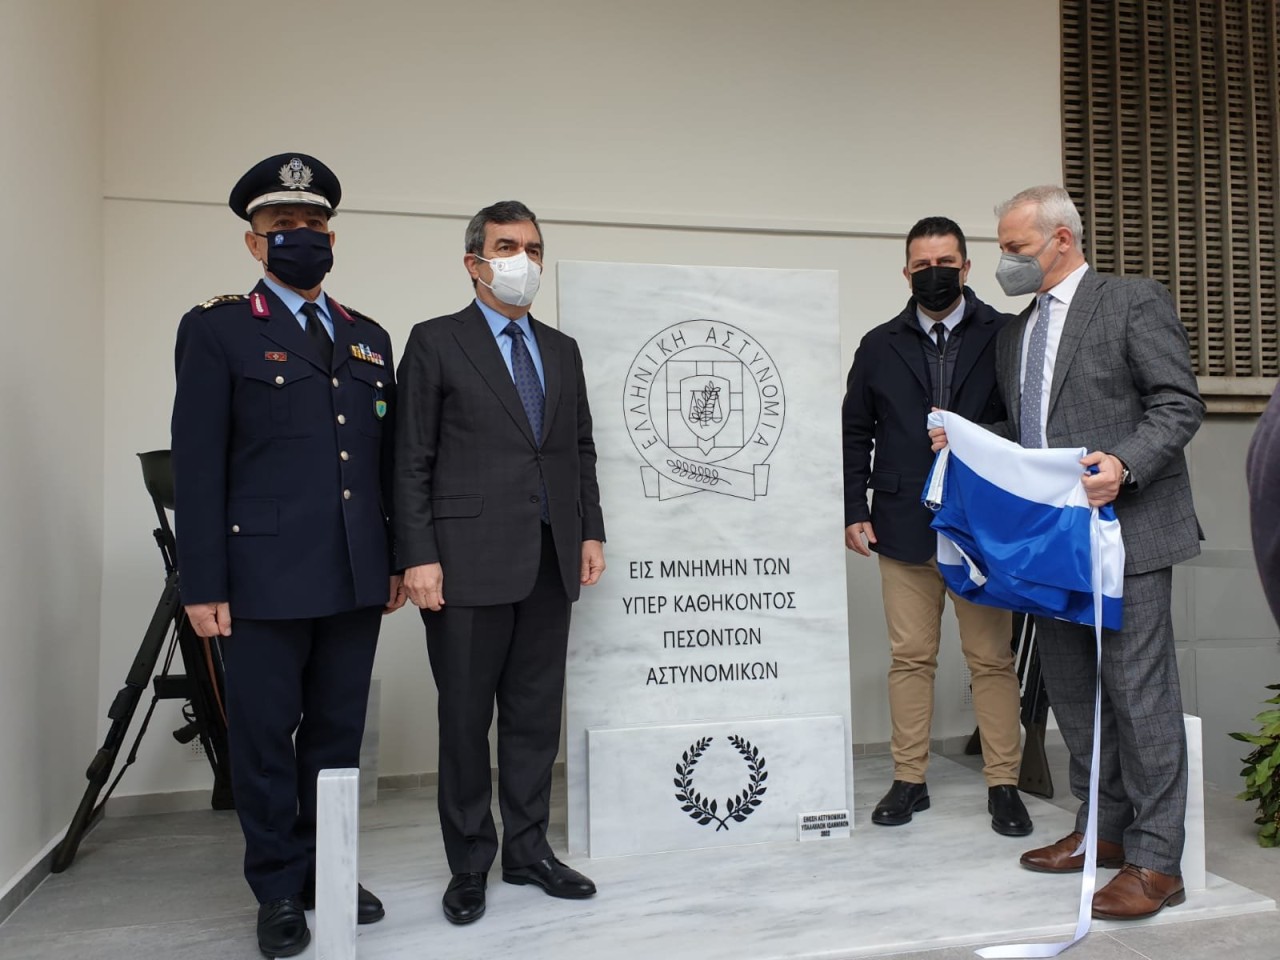 Μνημείο για την θυσία πέντε αστυνομικών των Ιωαννίνων – Μεταξύ αυτών και ο επικεφαλής φρουράς στο Προξενείο της Ελλάδος στο Αργυρόκαστρο